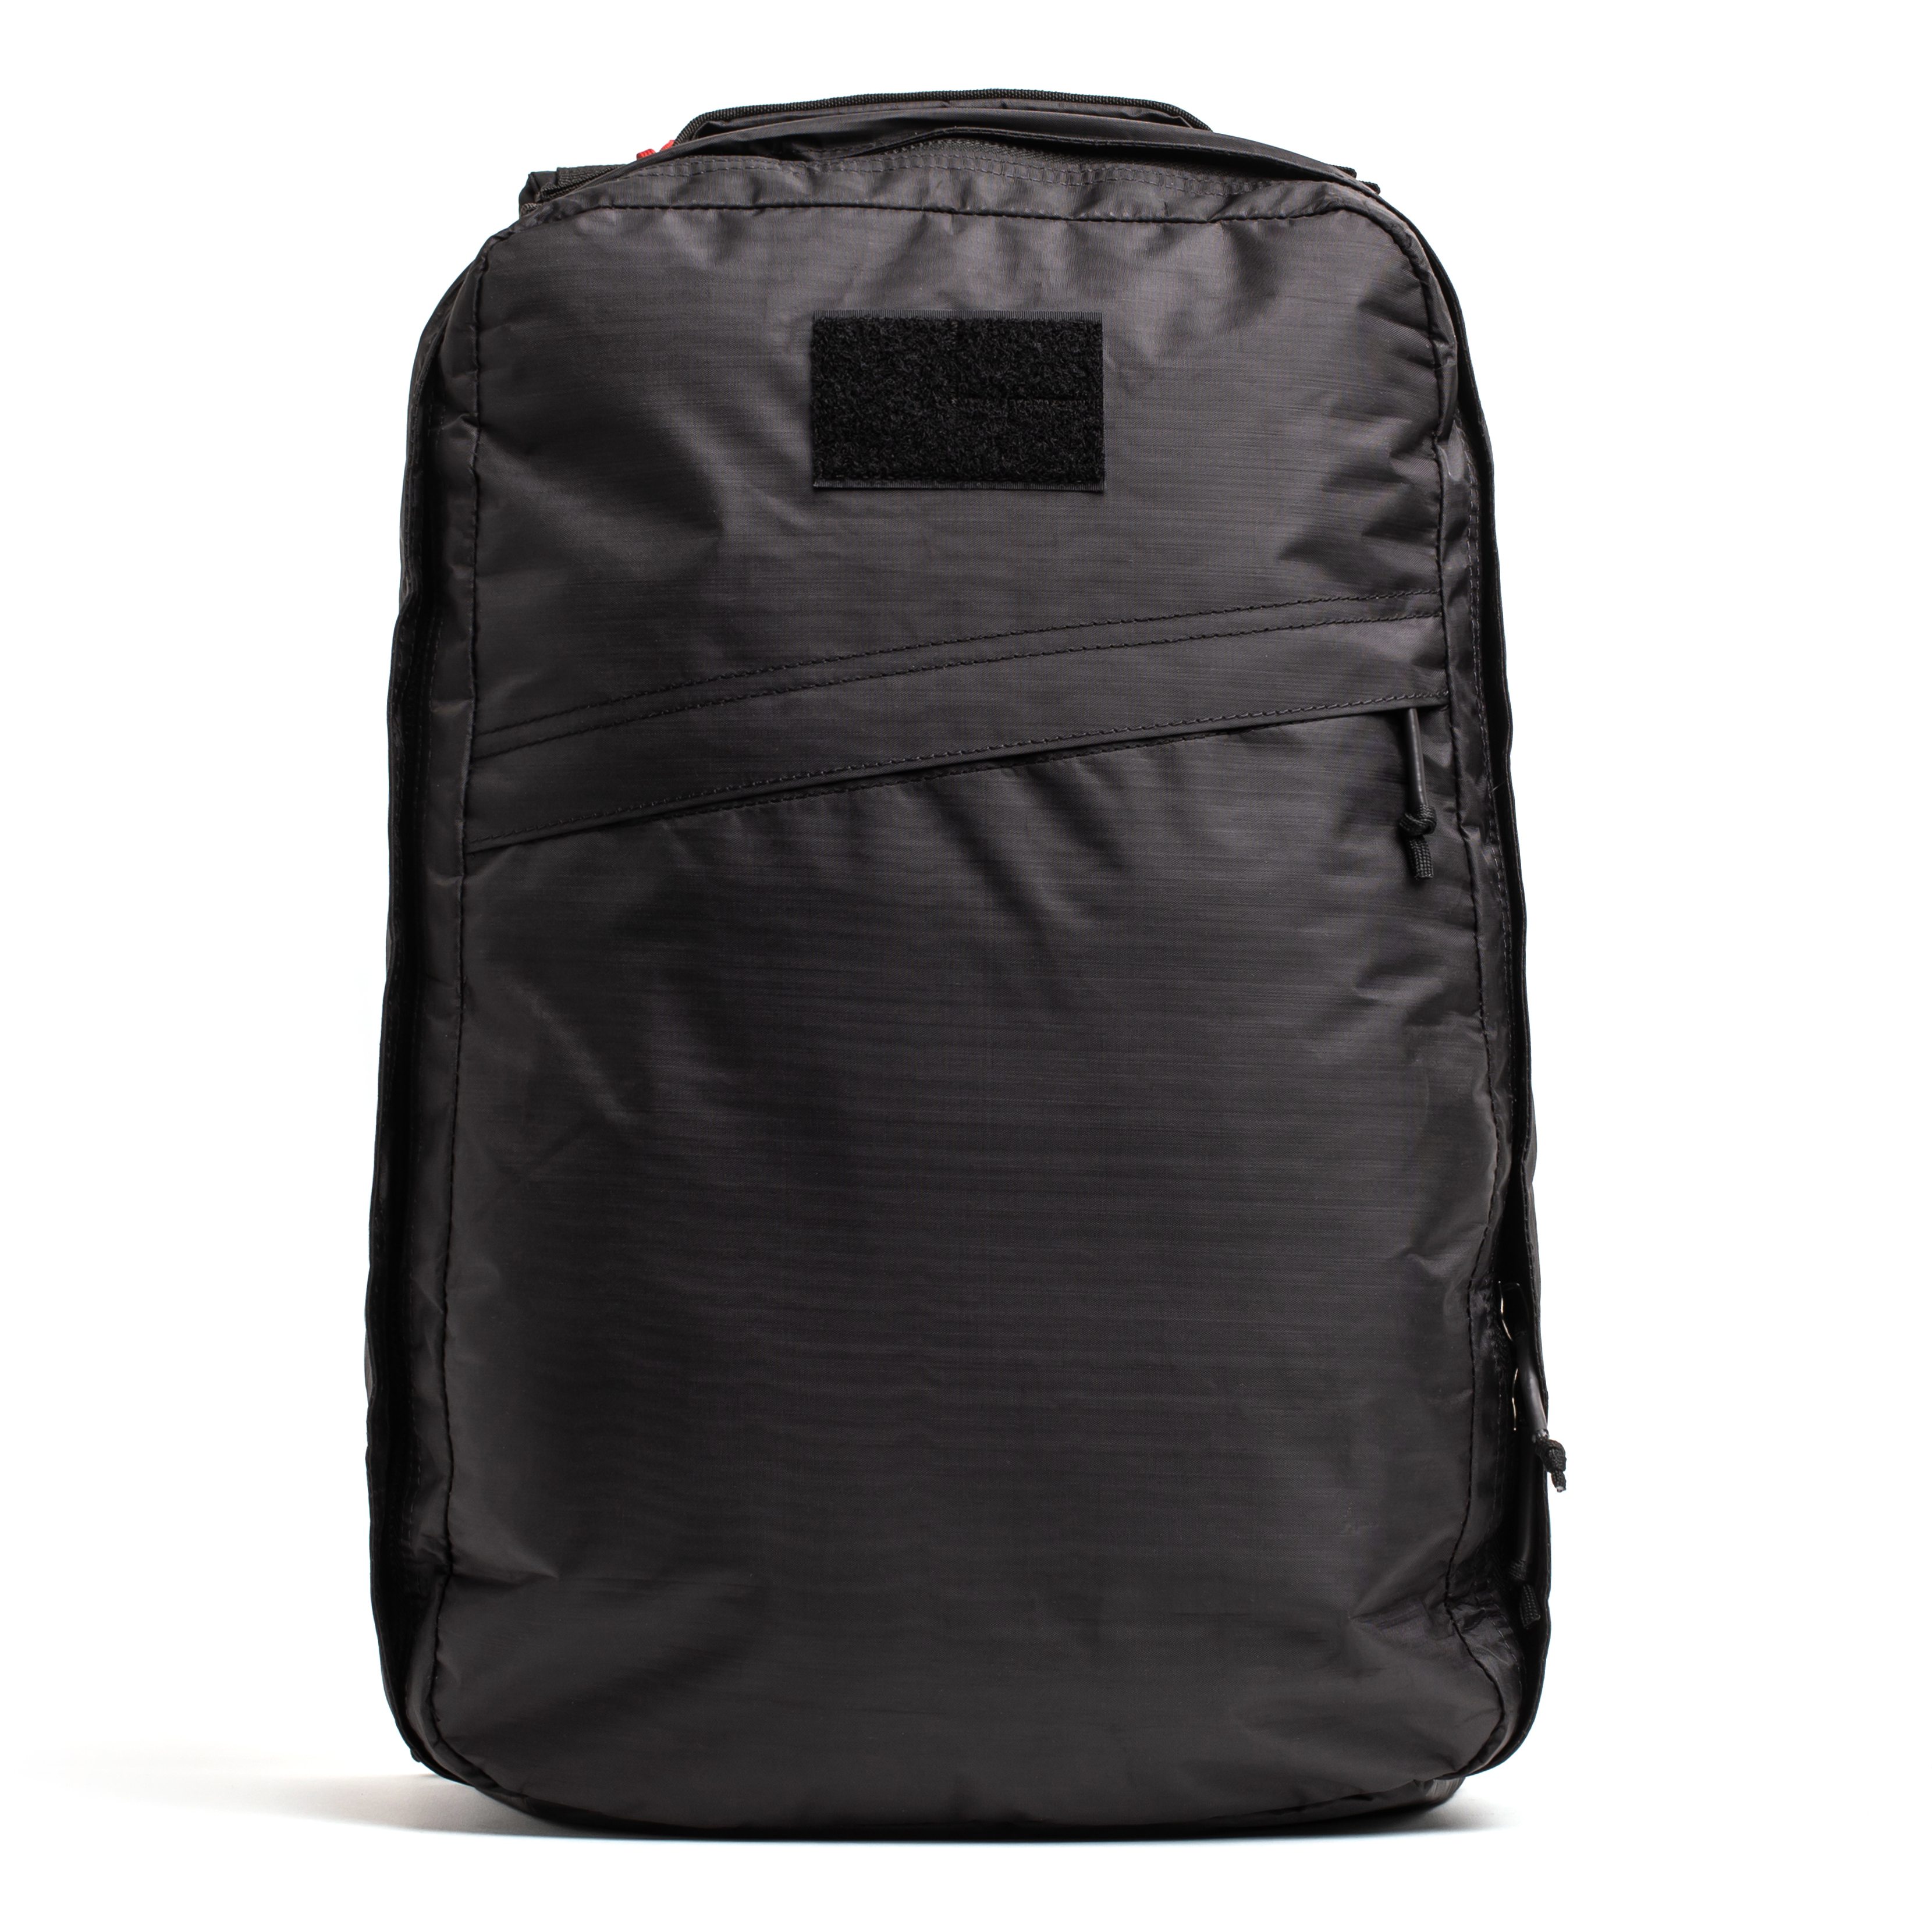 GORUCK GR1 Dyneema Backpack - 21L - Black Dyneema | Backpacks ...